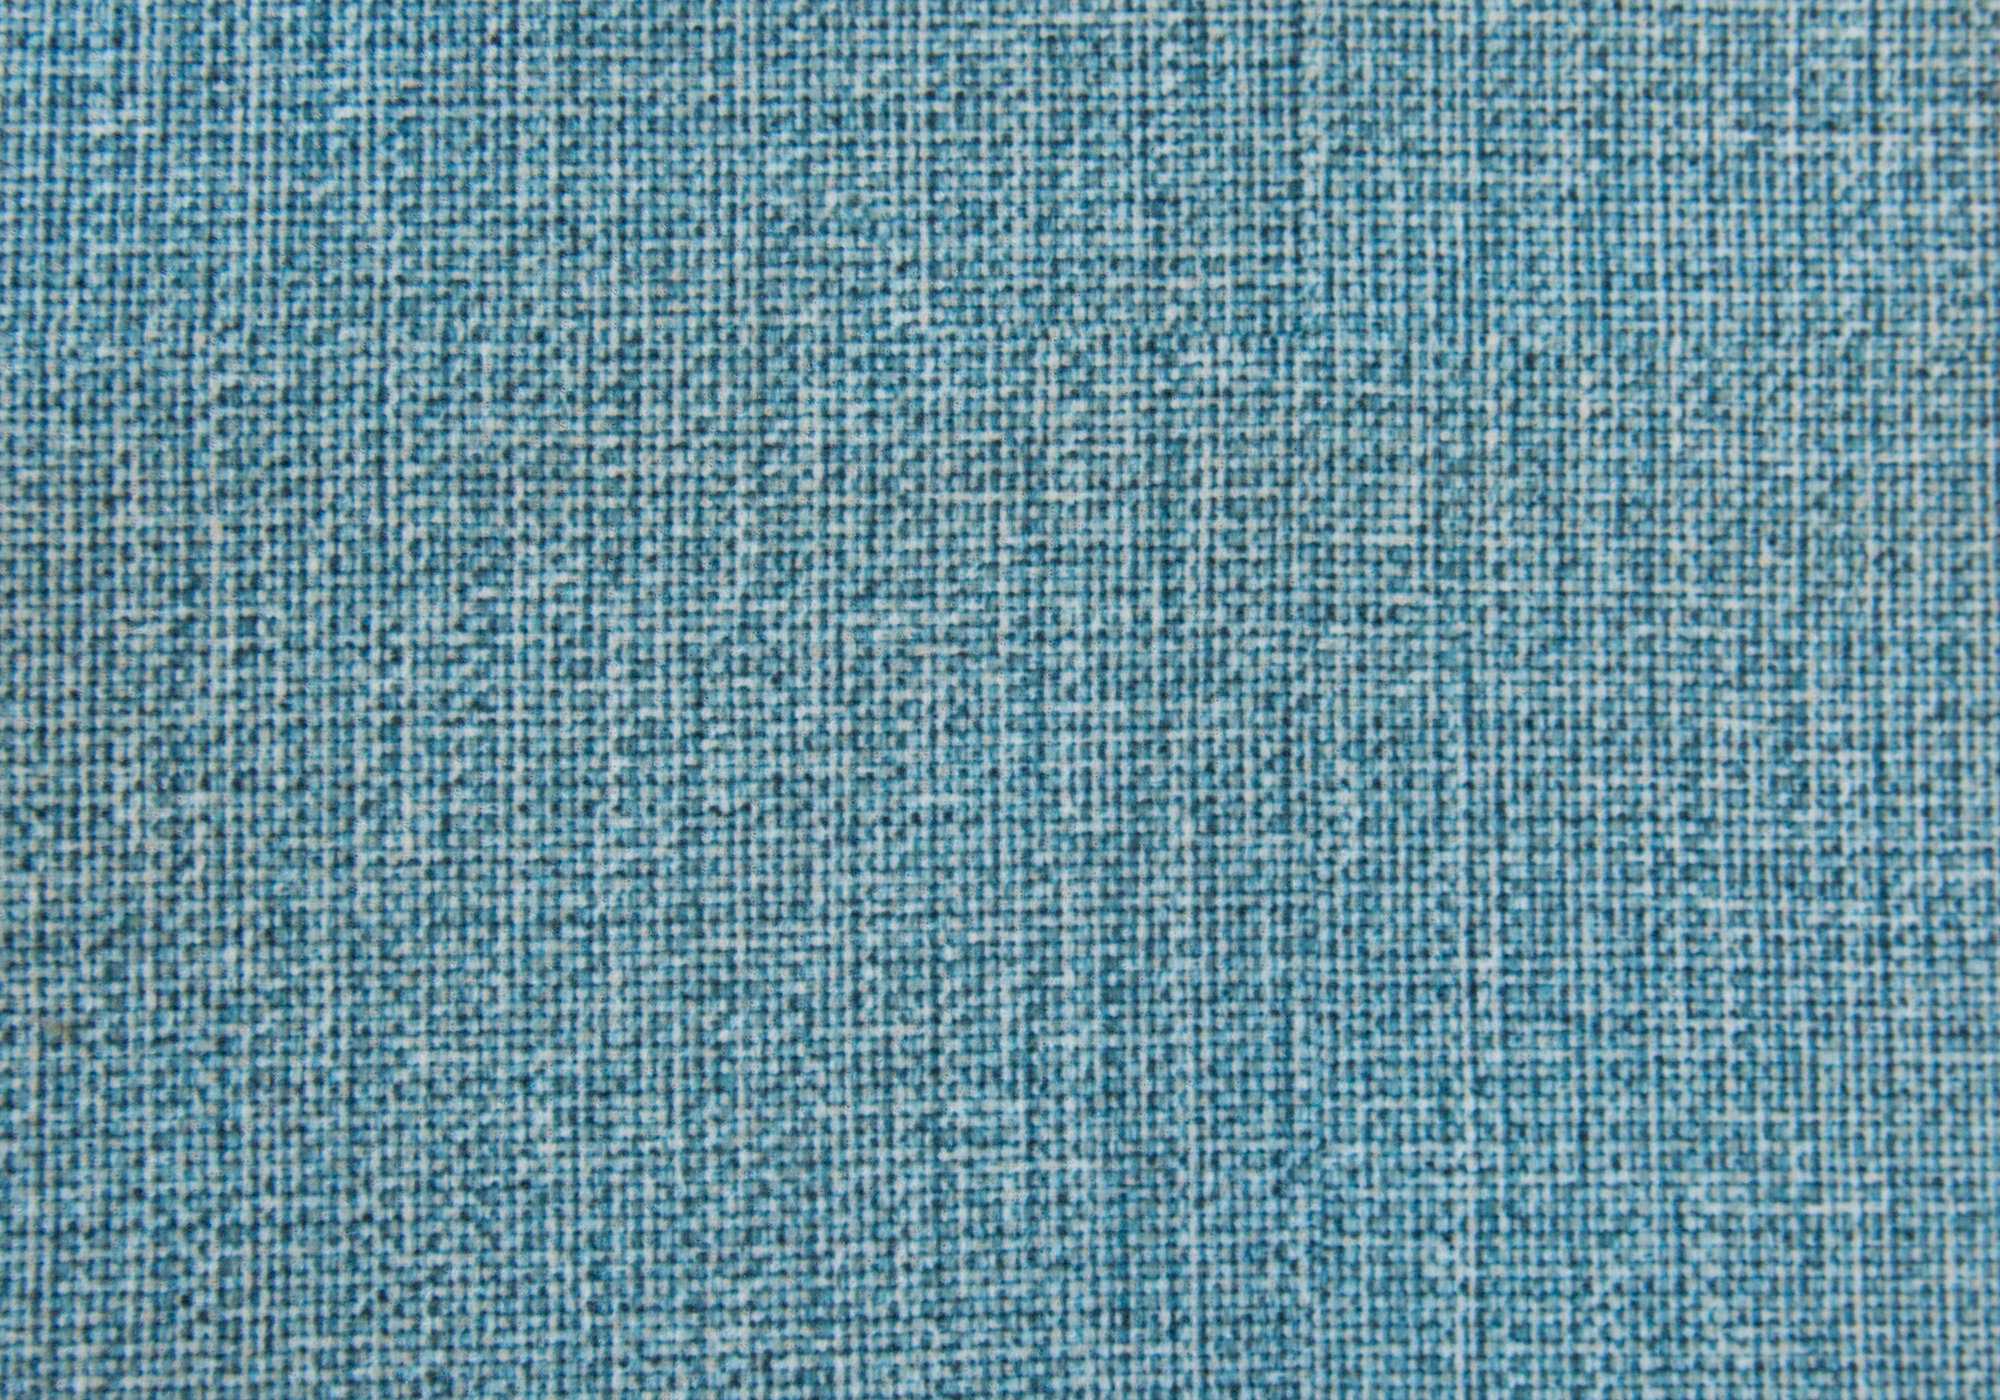 16.75" x 16.75" x 17" Light Blue Linen Look Fabric Ottoman